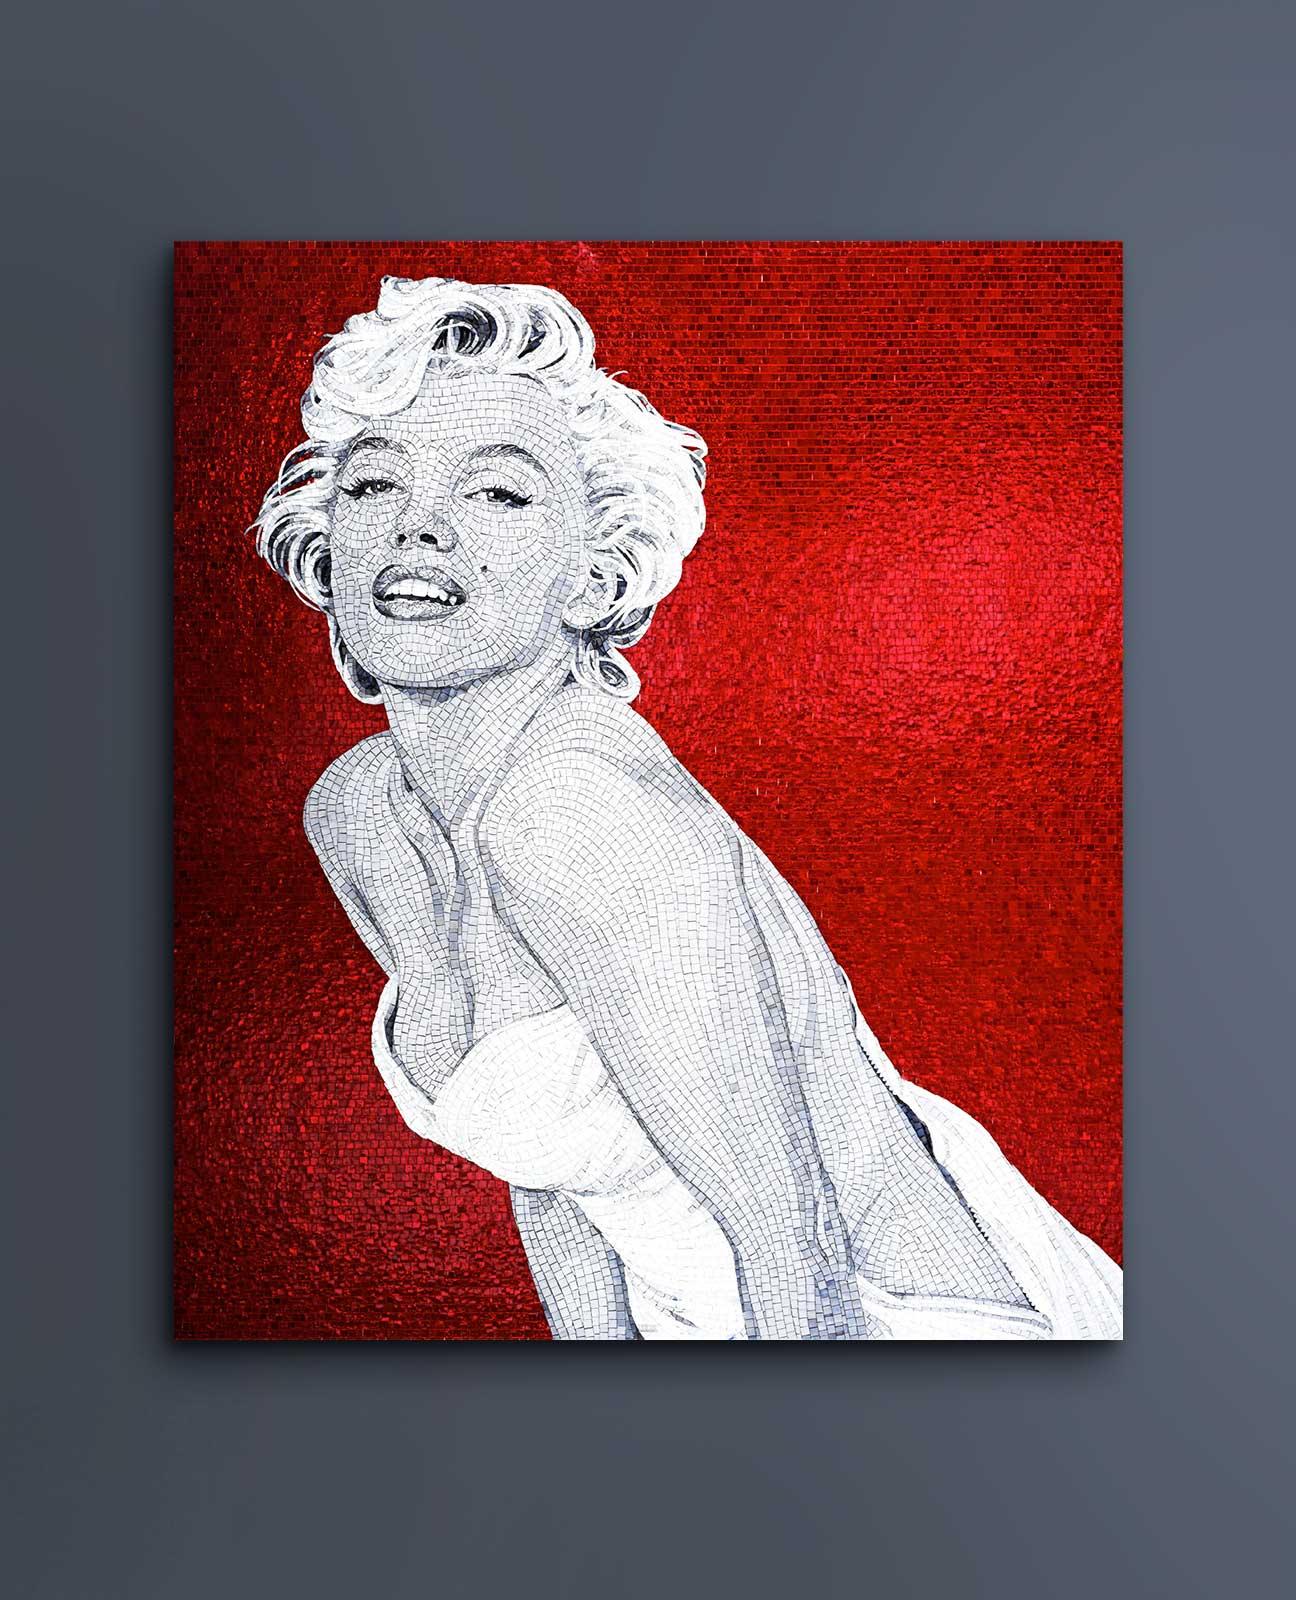 Dieses farbenfrohe Pop-Inspirationsmosaik ist eine Ode an die beliebte und einzigartige Marilyn Monroe. Die Diva ist immer noch eine der bedeutendsten Schauspielerinnen der großen Leinwand. Umgeben von vielfarbigen Elementen posiert Monroe sinnlich